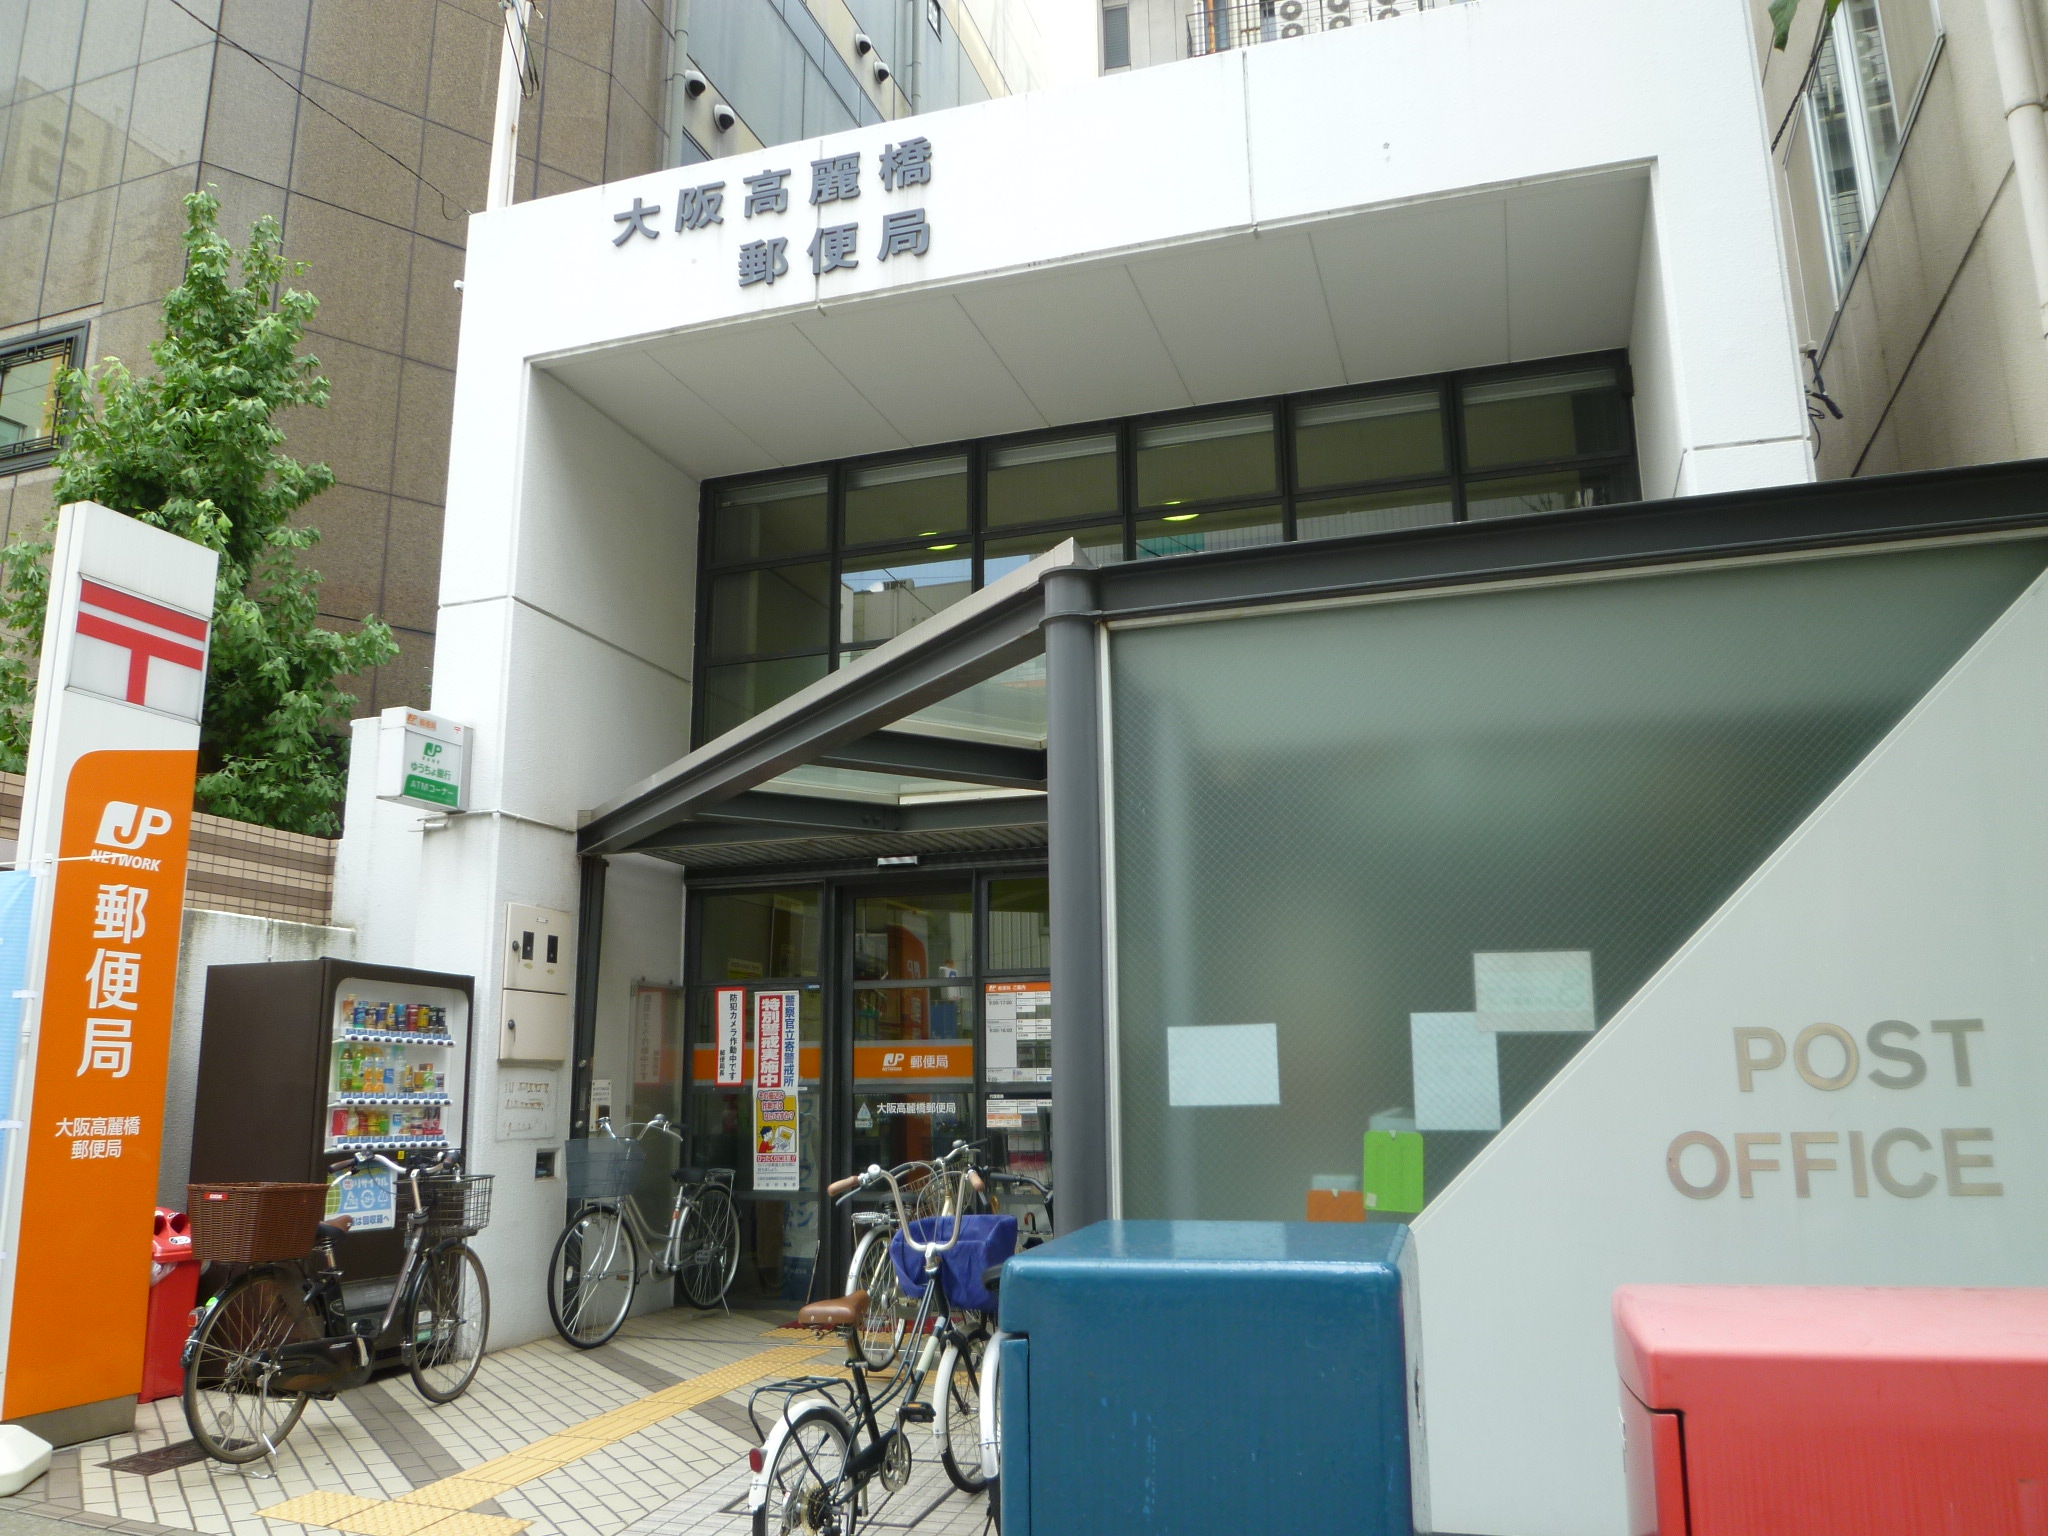 post office. 296m to Osaka Kōraibashi post office (post office)